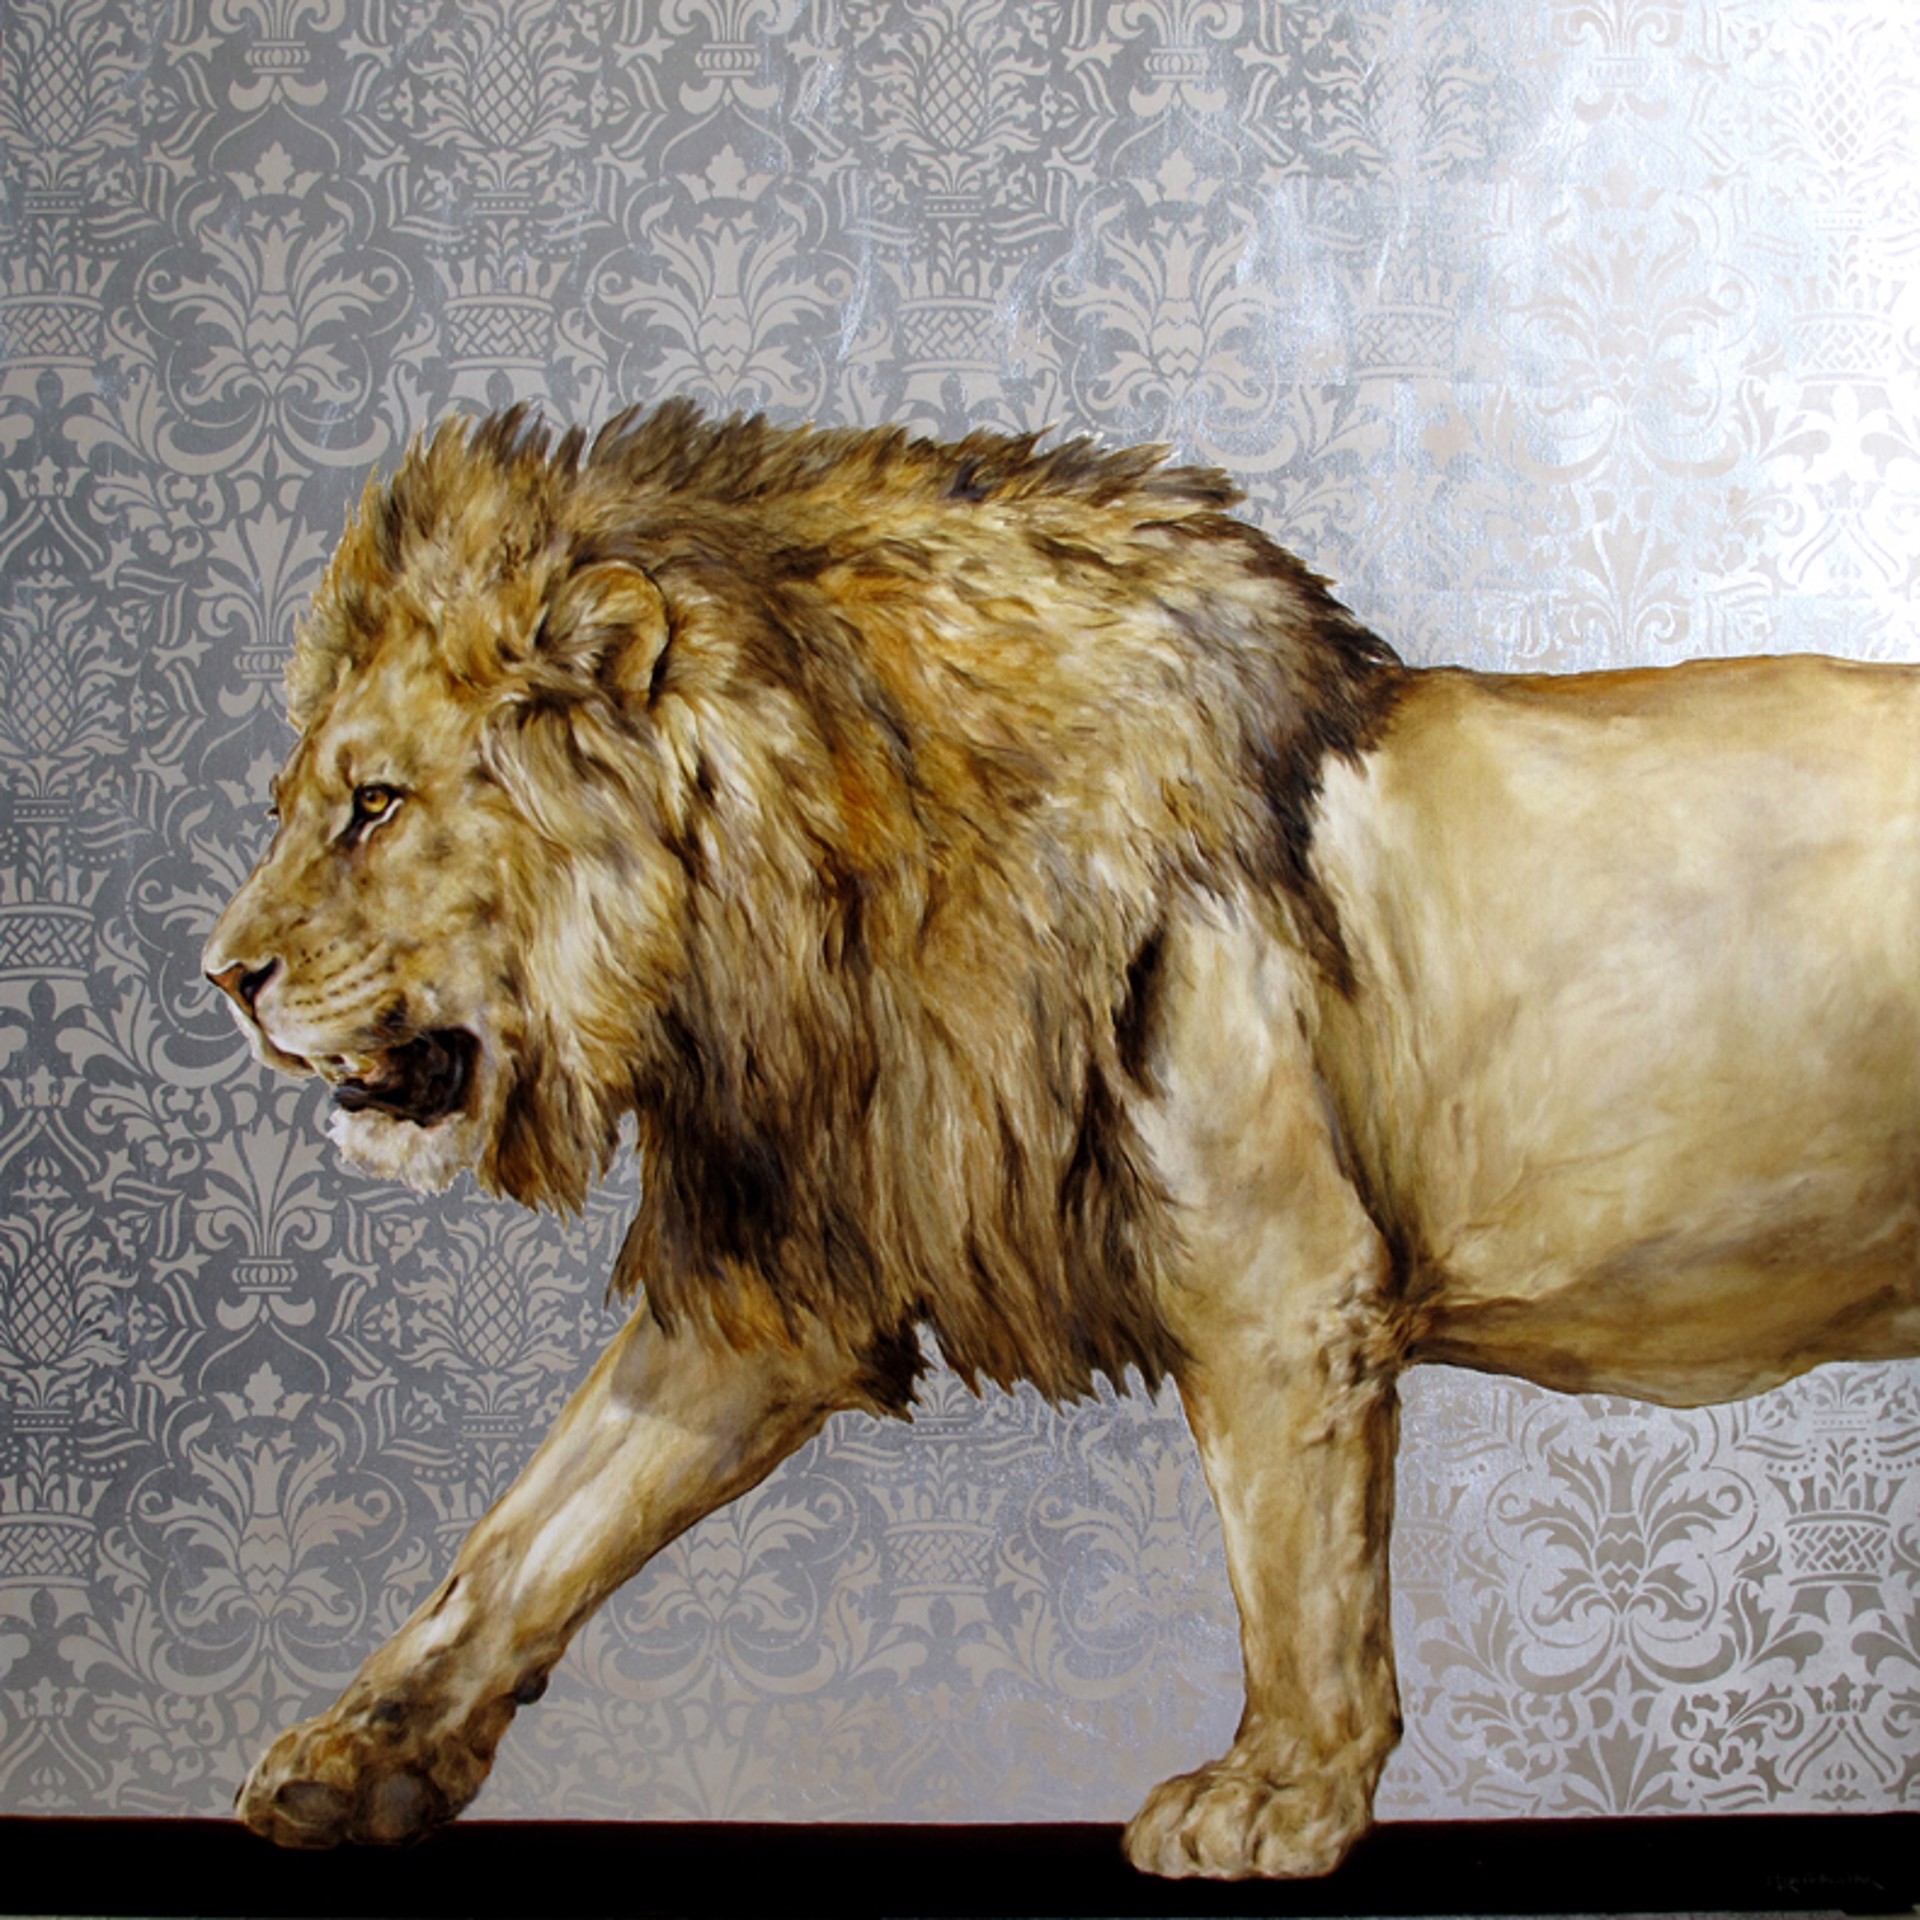 Lions Gait by Michele Kortbawi-Wilk